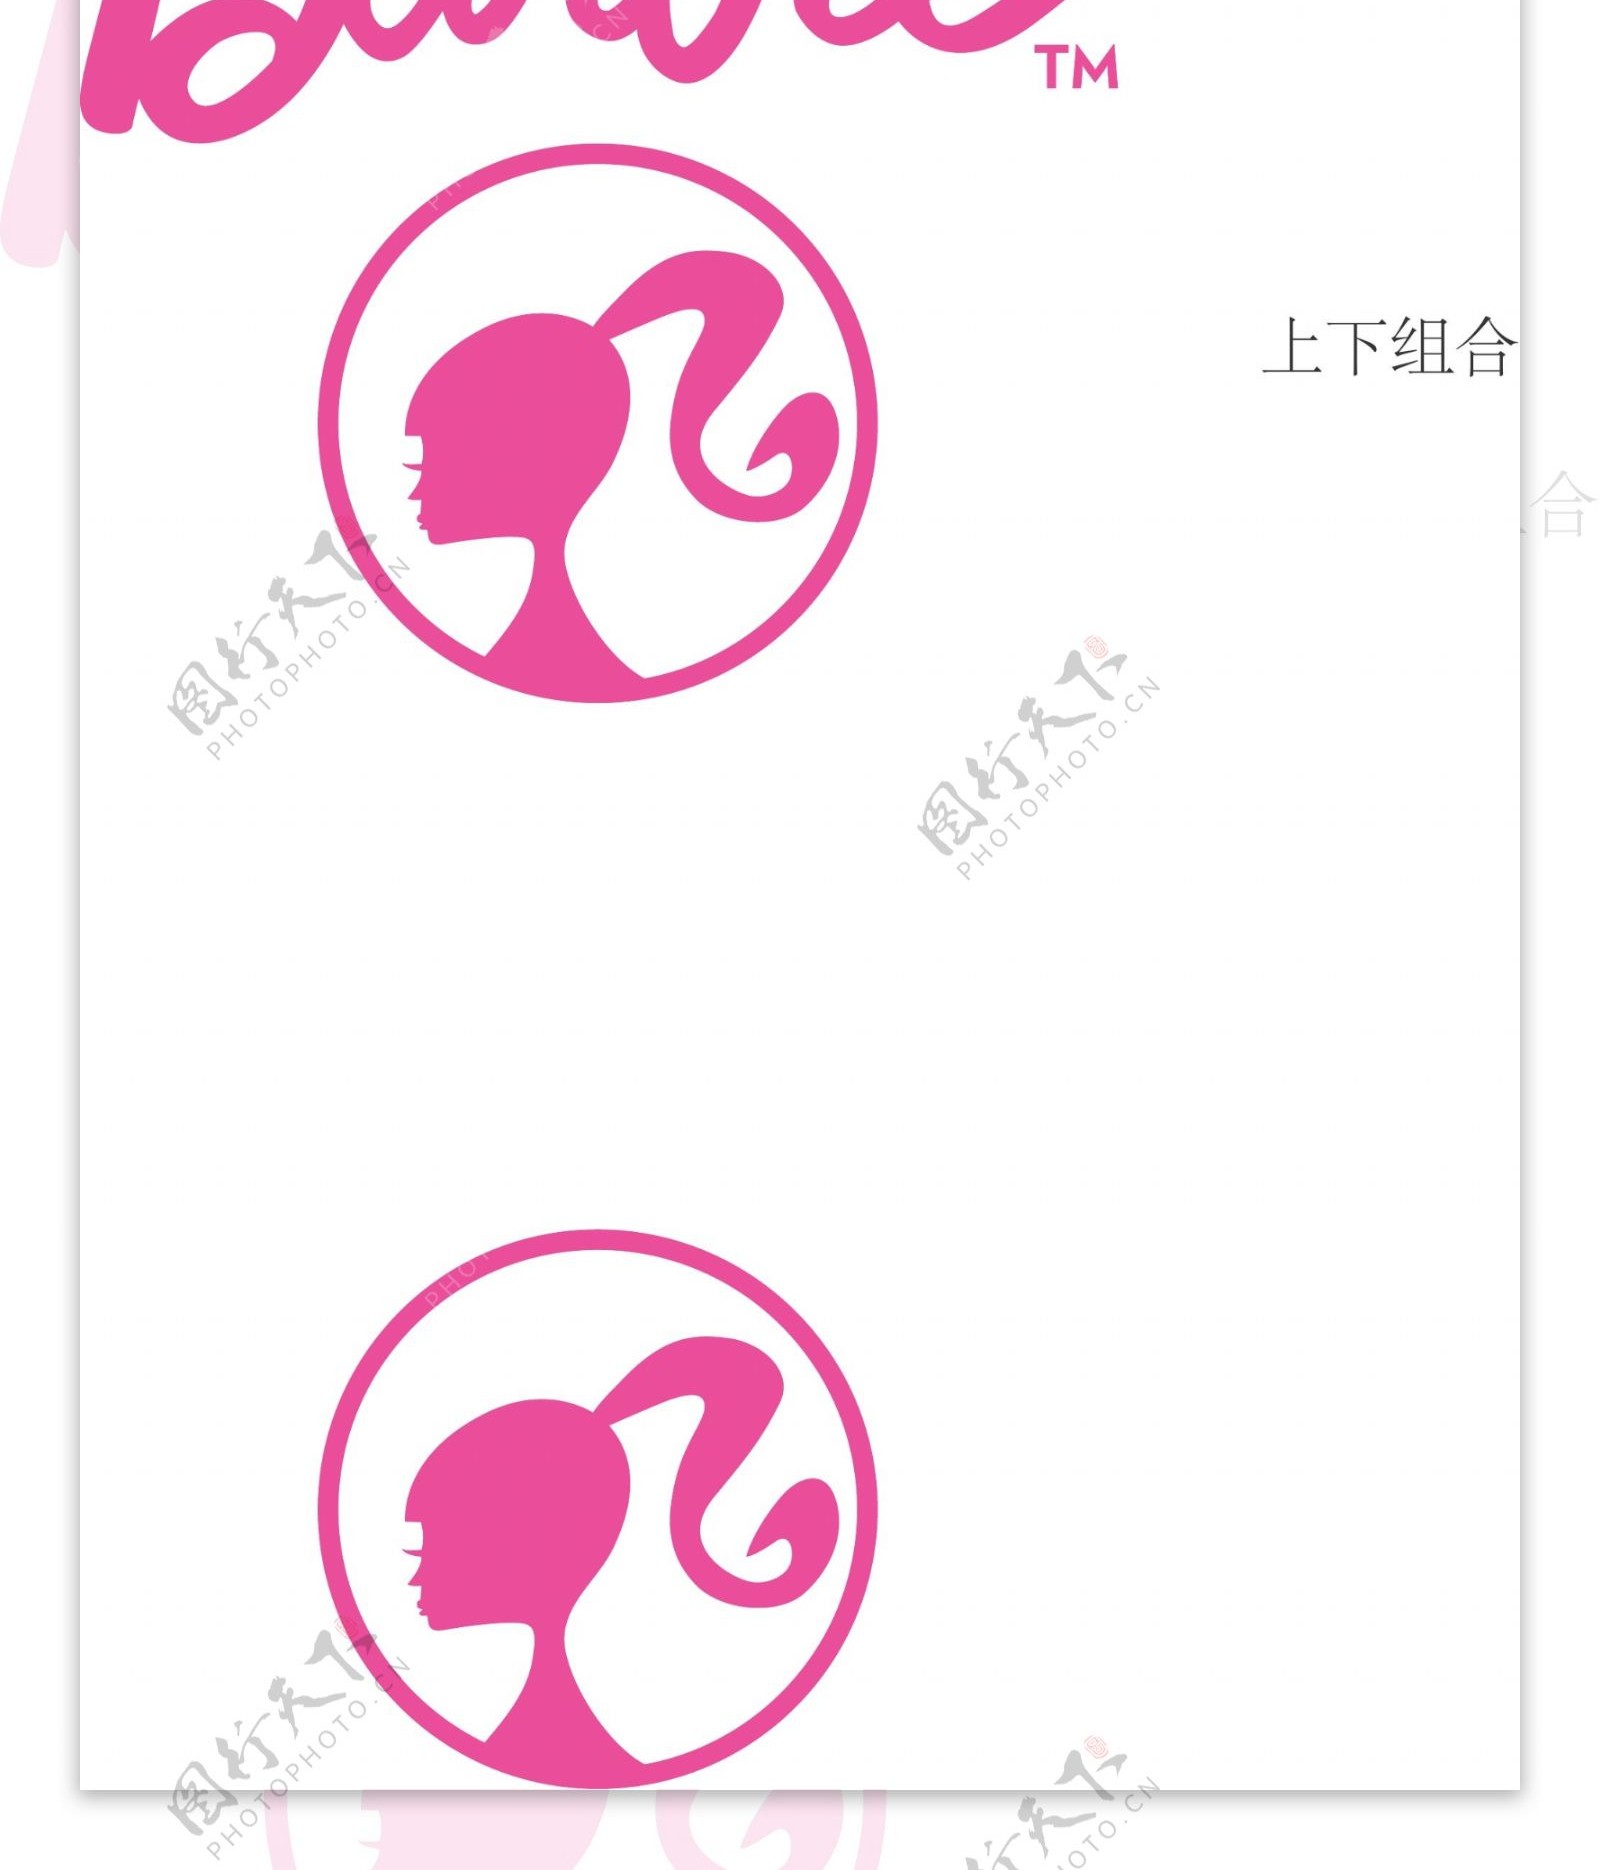 芭比logo-图库-五毛网